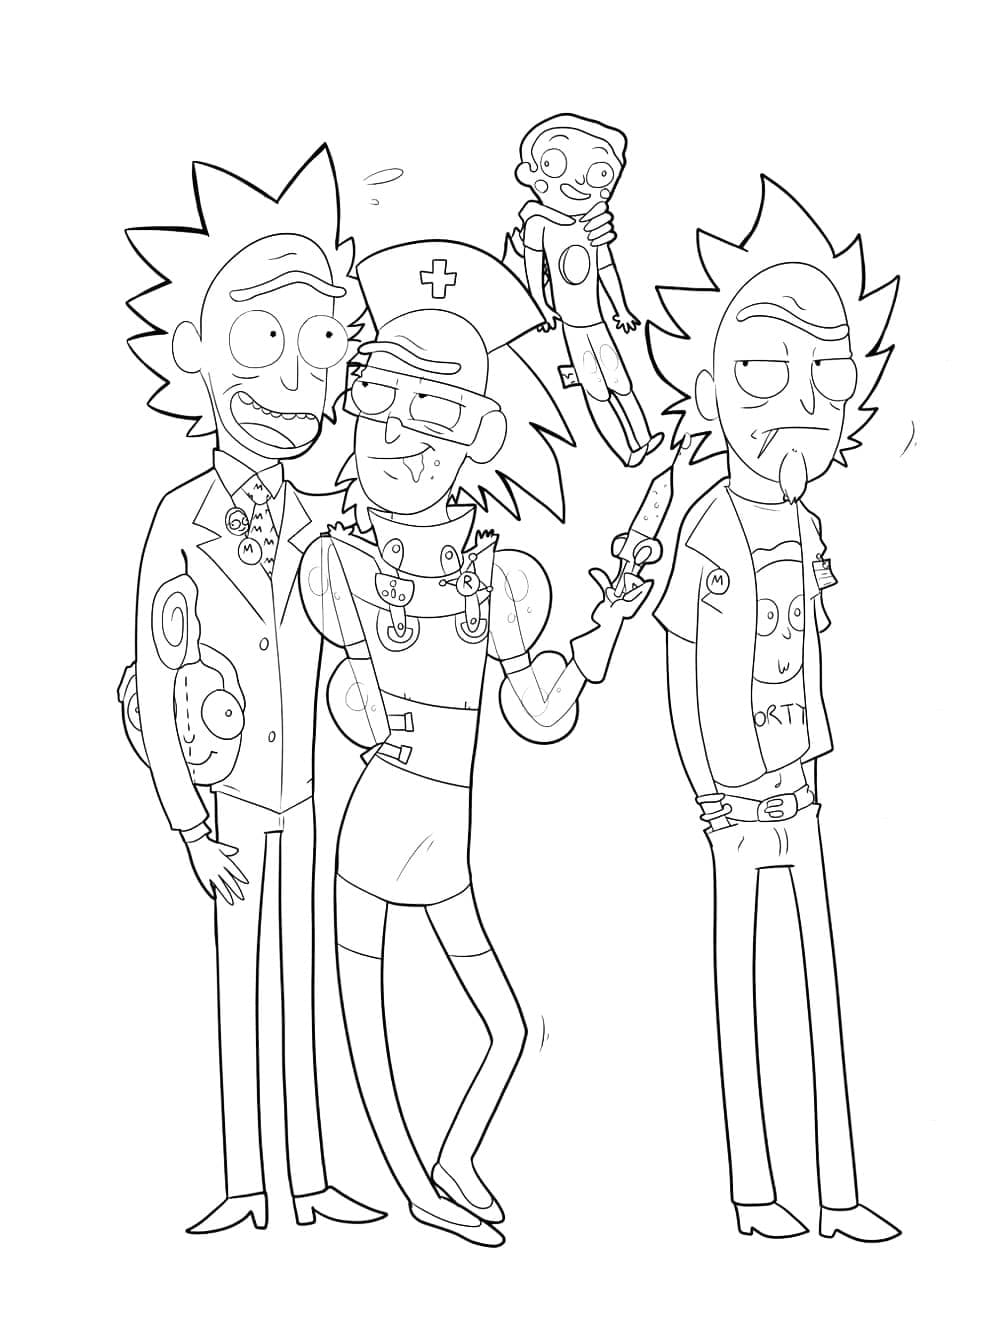 Rick et Morty Pour Enfants coloring page